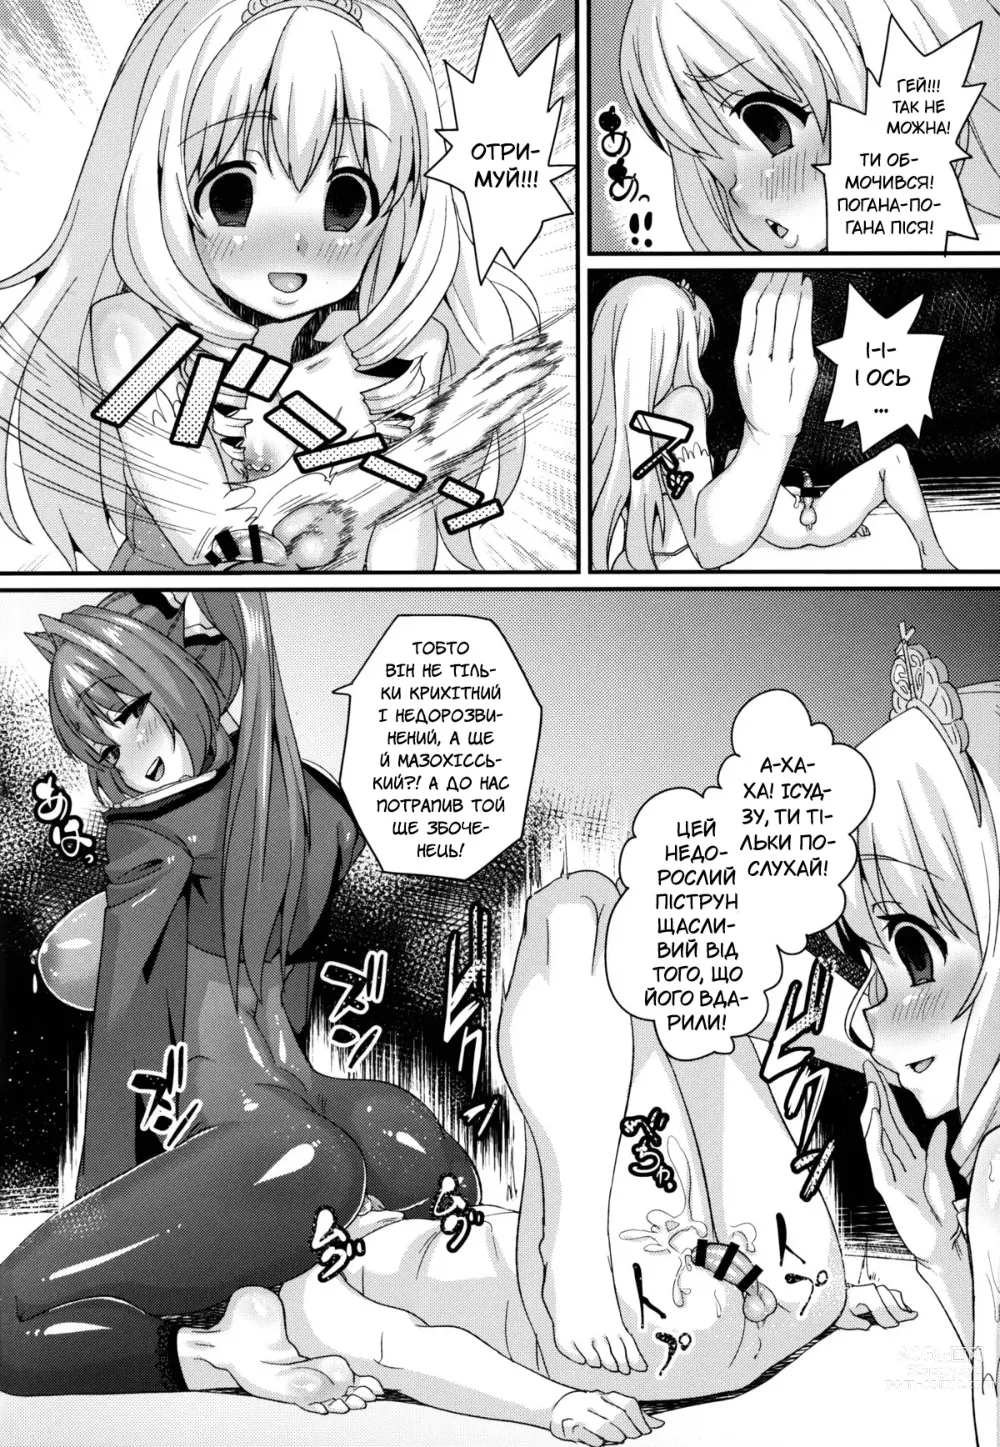 Page 22 of doujinshi Прощавай, розкішний парче Амаґі!